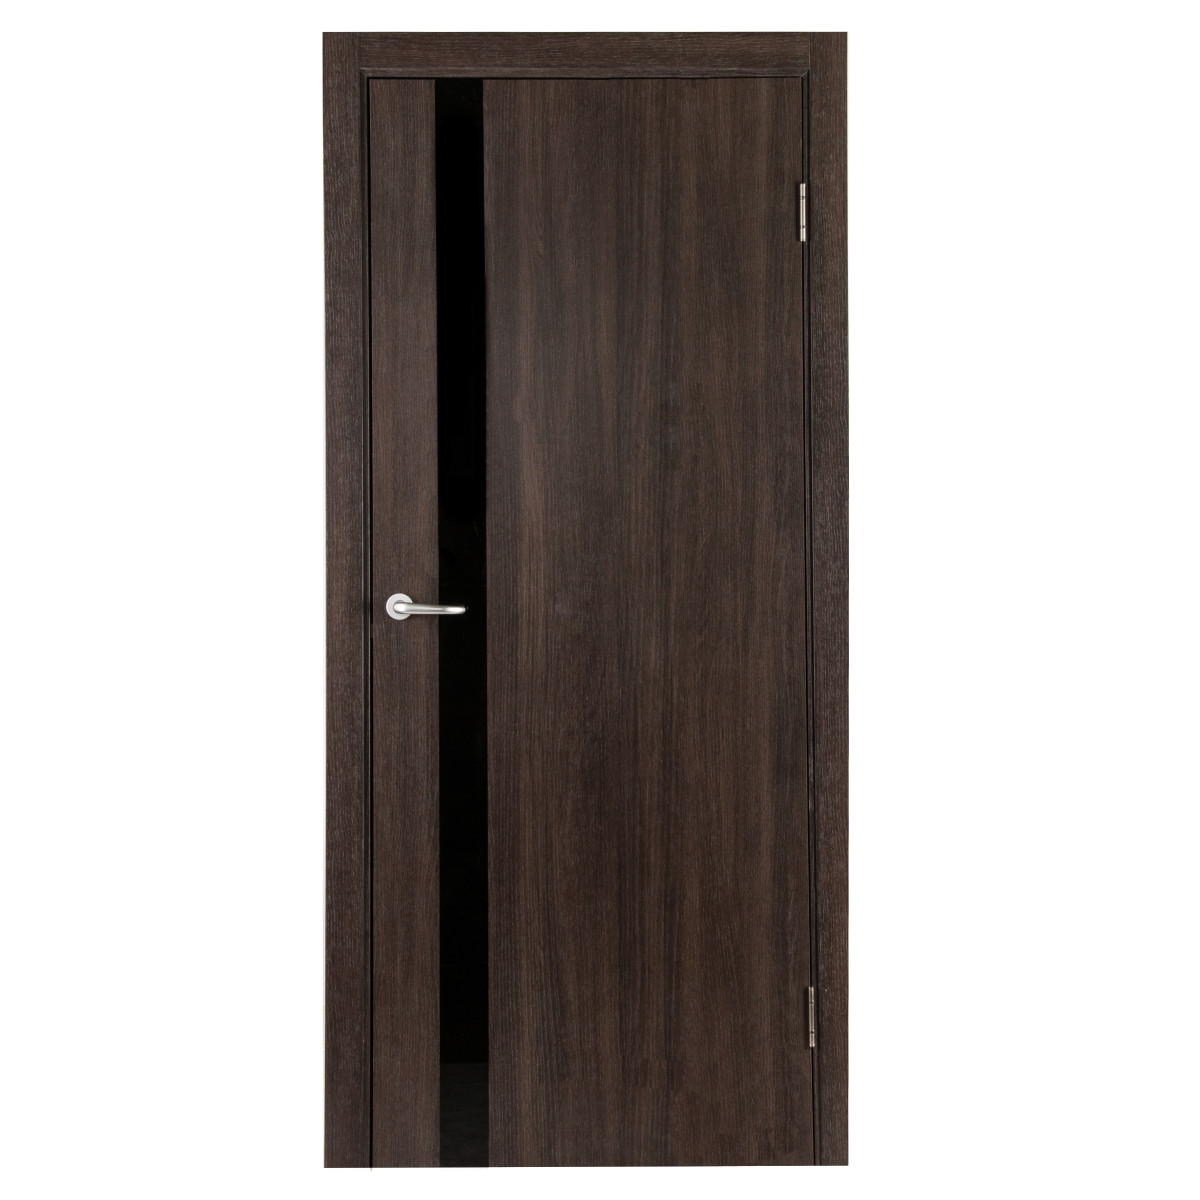 Дверь межкомнатная глухая с замком и петлями в комплекте Мирра 60x200 см, Hardflex, цвет дуб кастелло